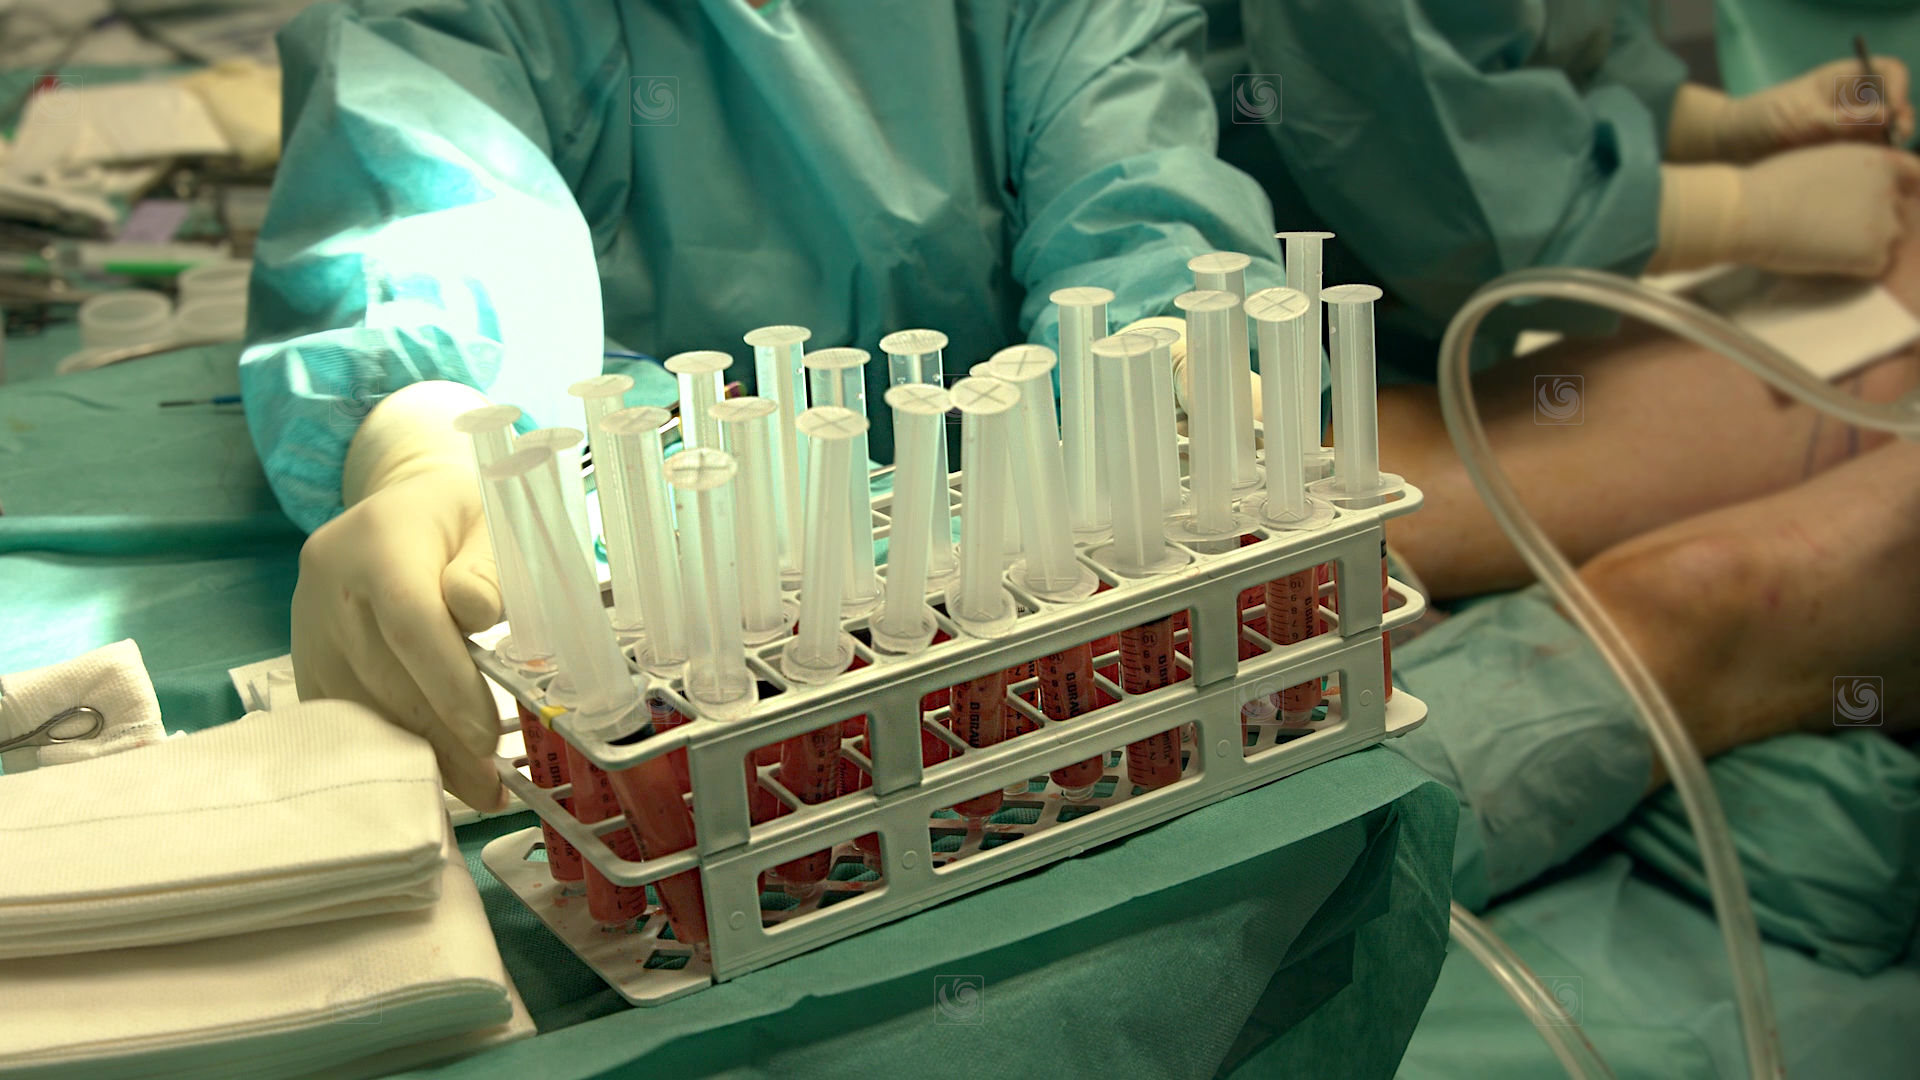 Fotograma de video mostrando detalles de diverso instrumental quirúrjico